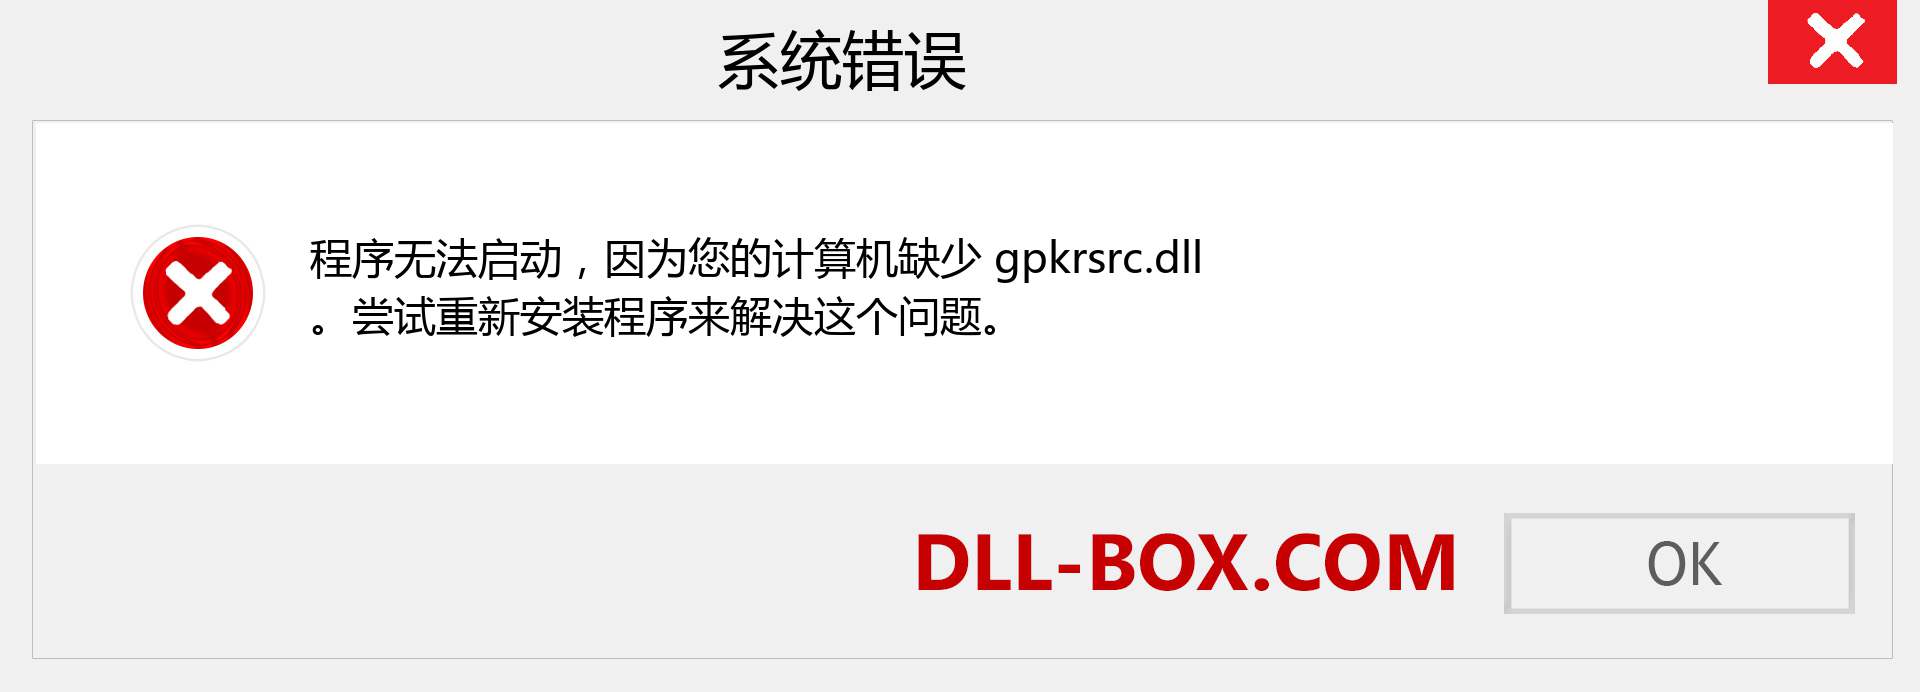 gpkrsrc.dll 文件丢失？。 适用于 Windows 7、8、10 的下载 - 修复 Windows、照片、图像上的 gpkrsrc dll 丢失错误